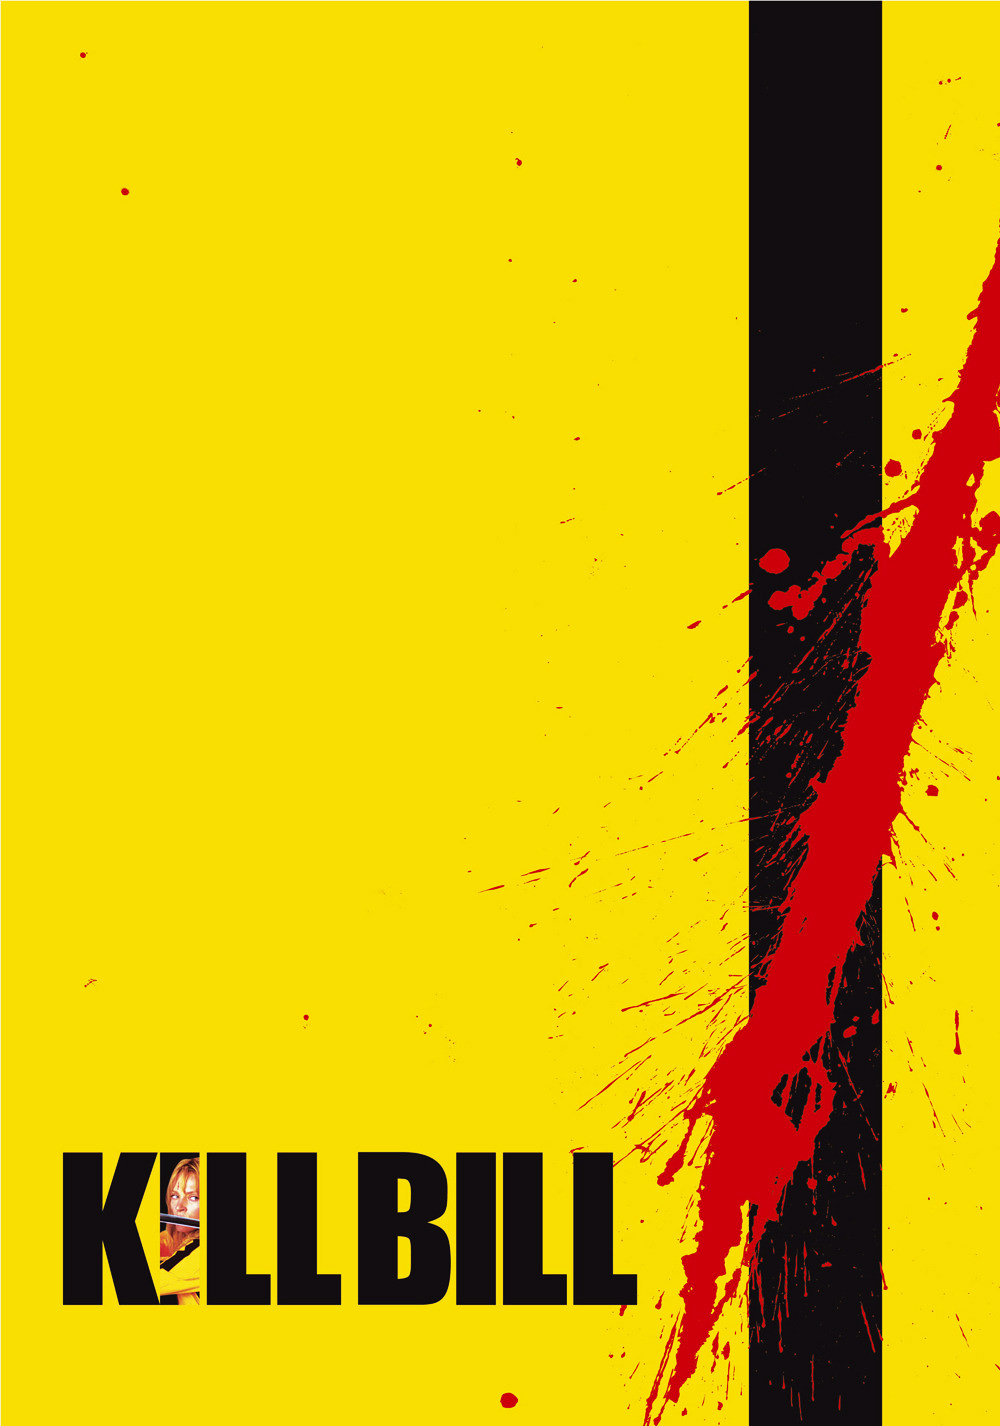 Kill Bill: Vol. 1 Art